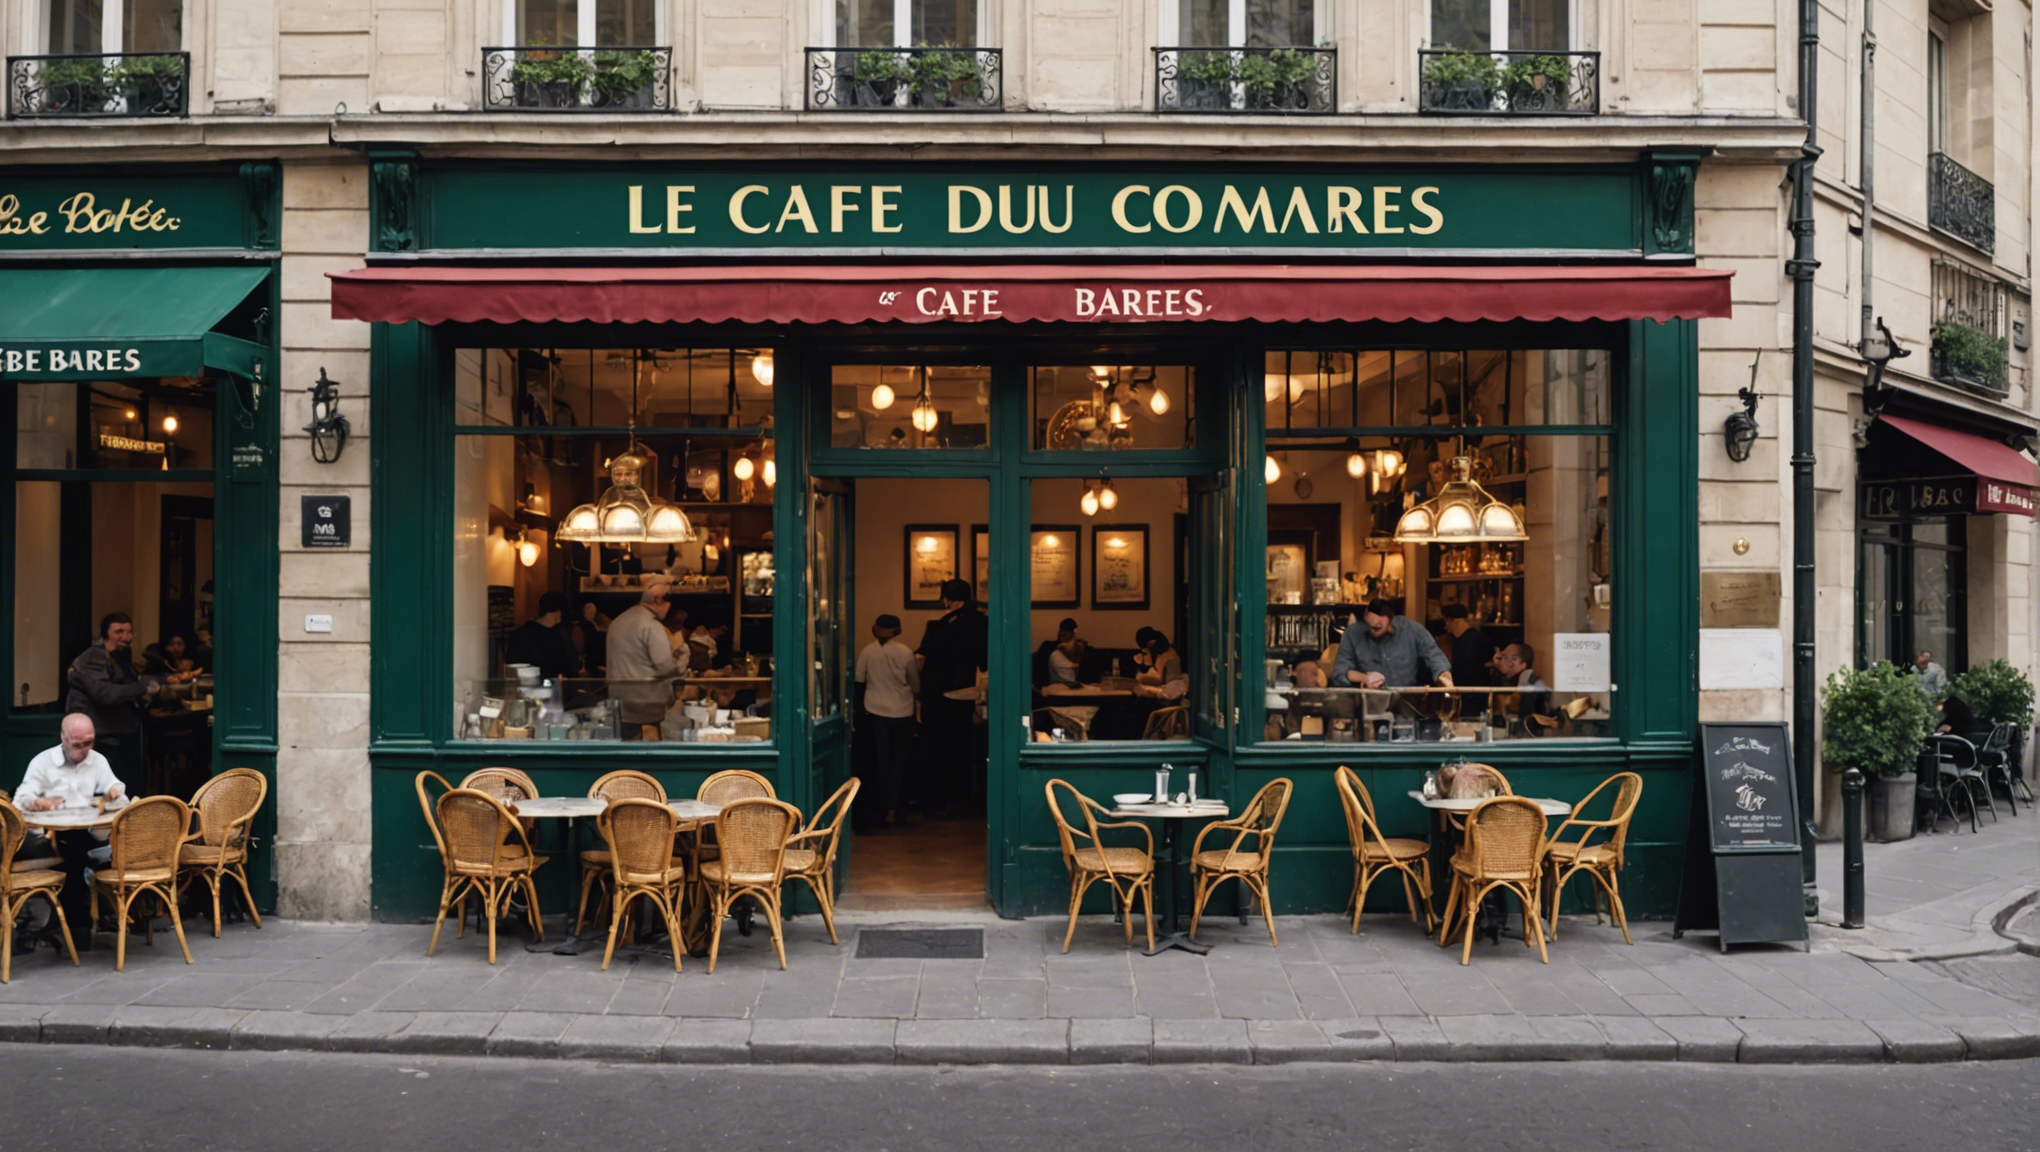 découvrez le café du commerce barbes, un lieu incontournable à paris pour savourer un café ou un verre dans une ambiance typiquement parisienne. profitez de l'atmosphère chaleureuse et de l'accueil convivial au cœur de la capitale.